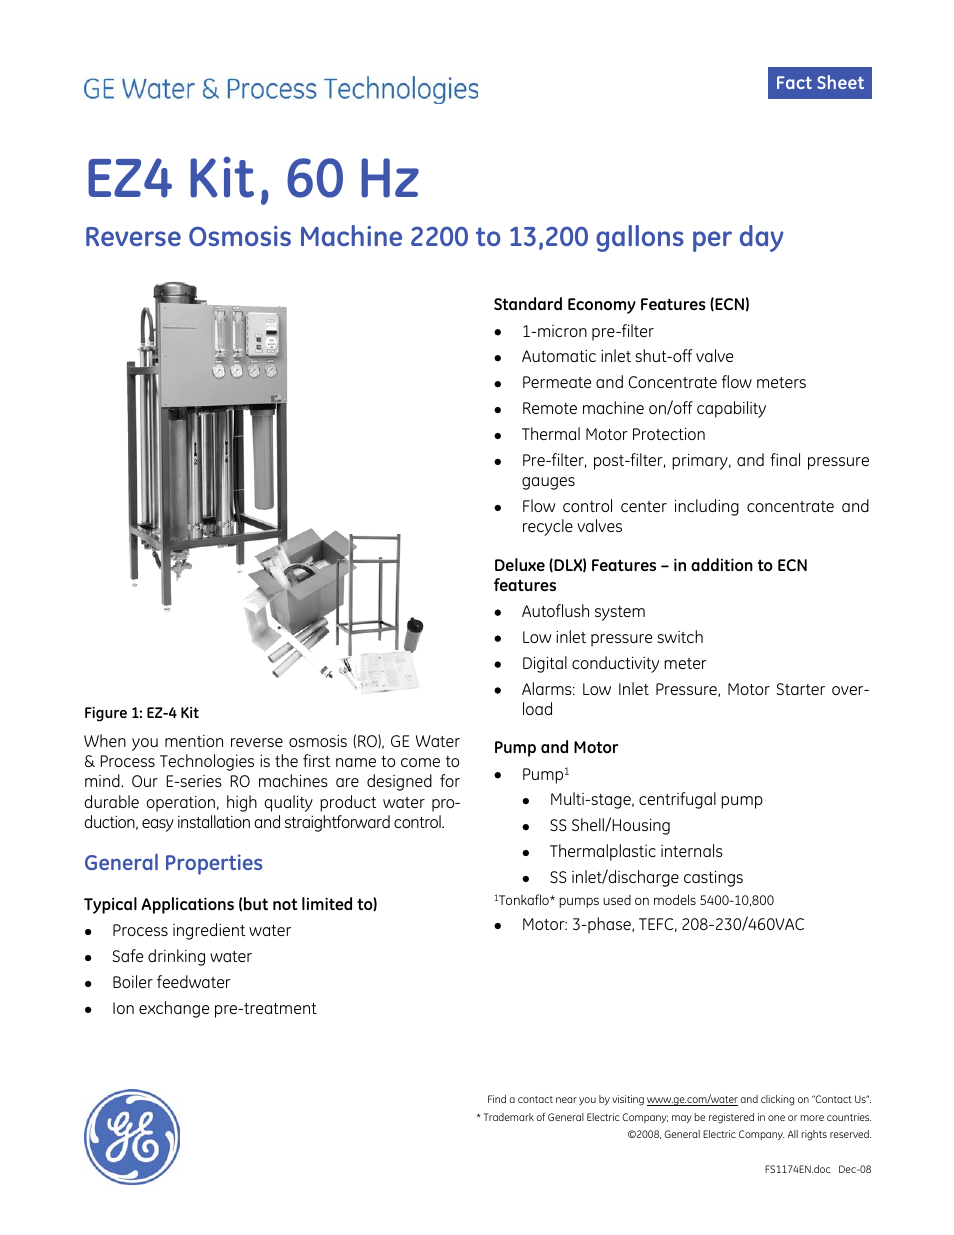 E-Series Reverse Osmosis - EZ-4 Kit 60 Hz